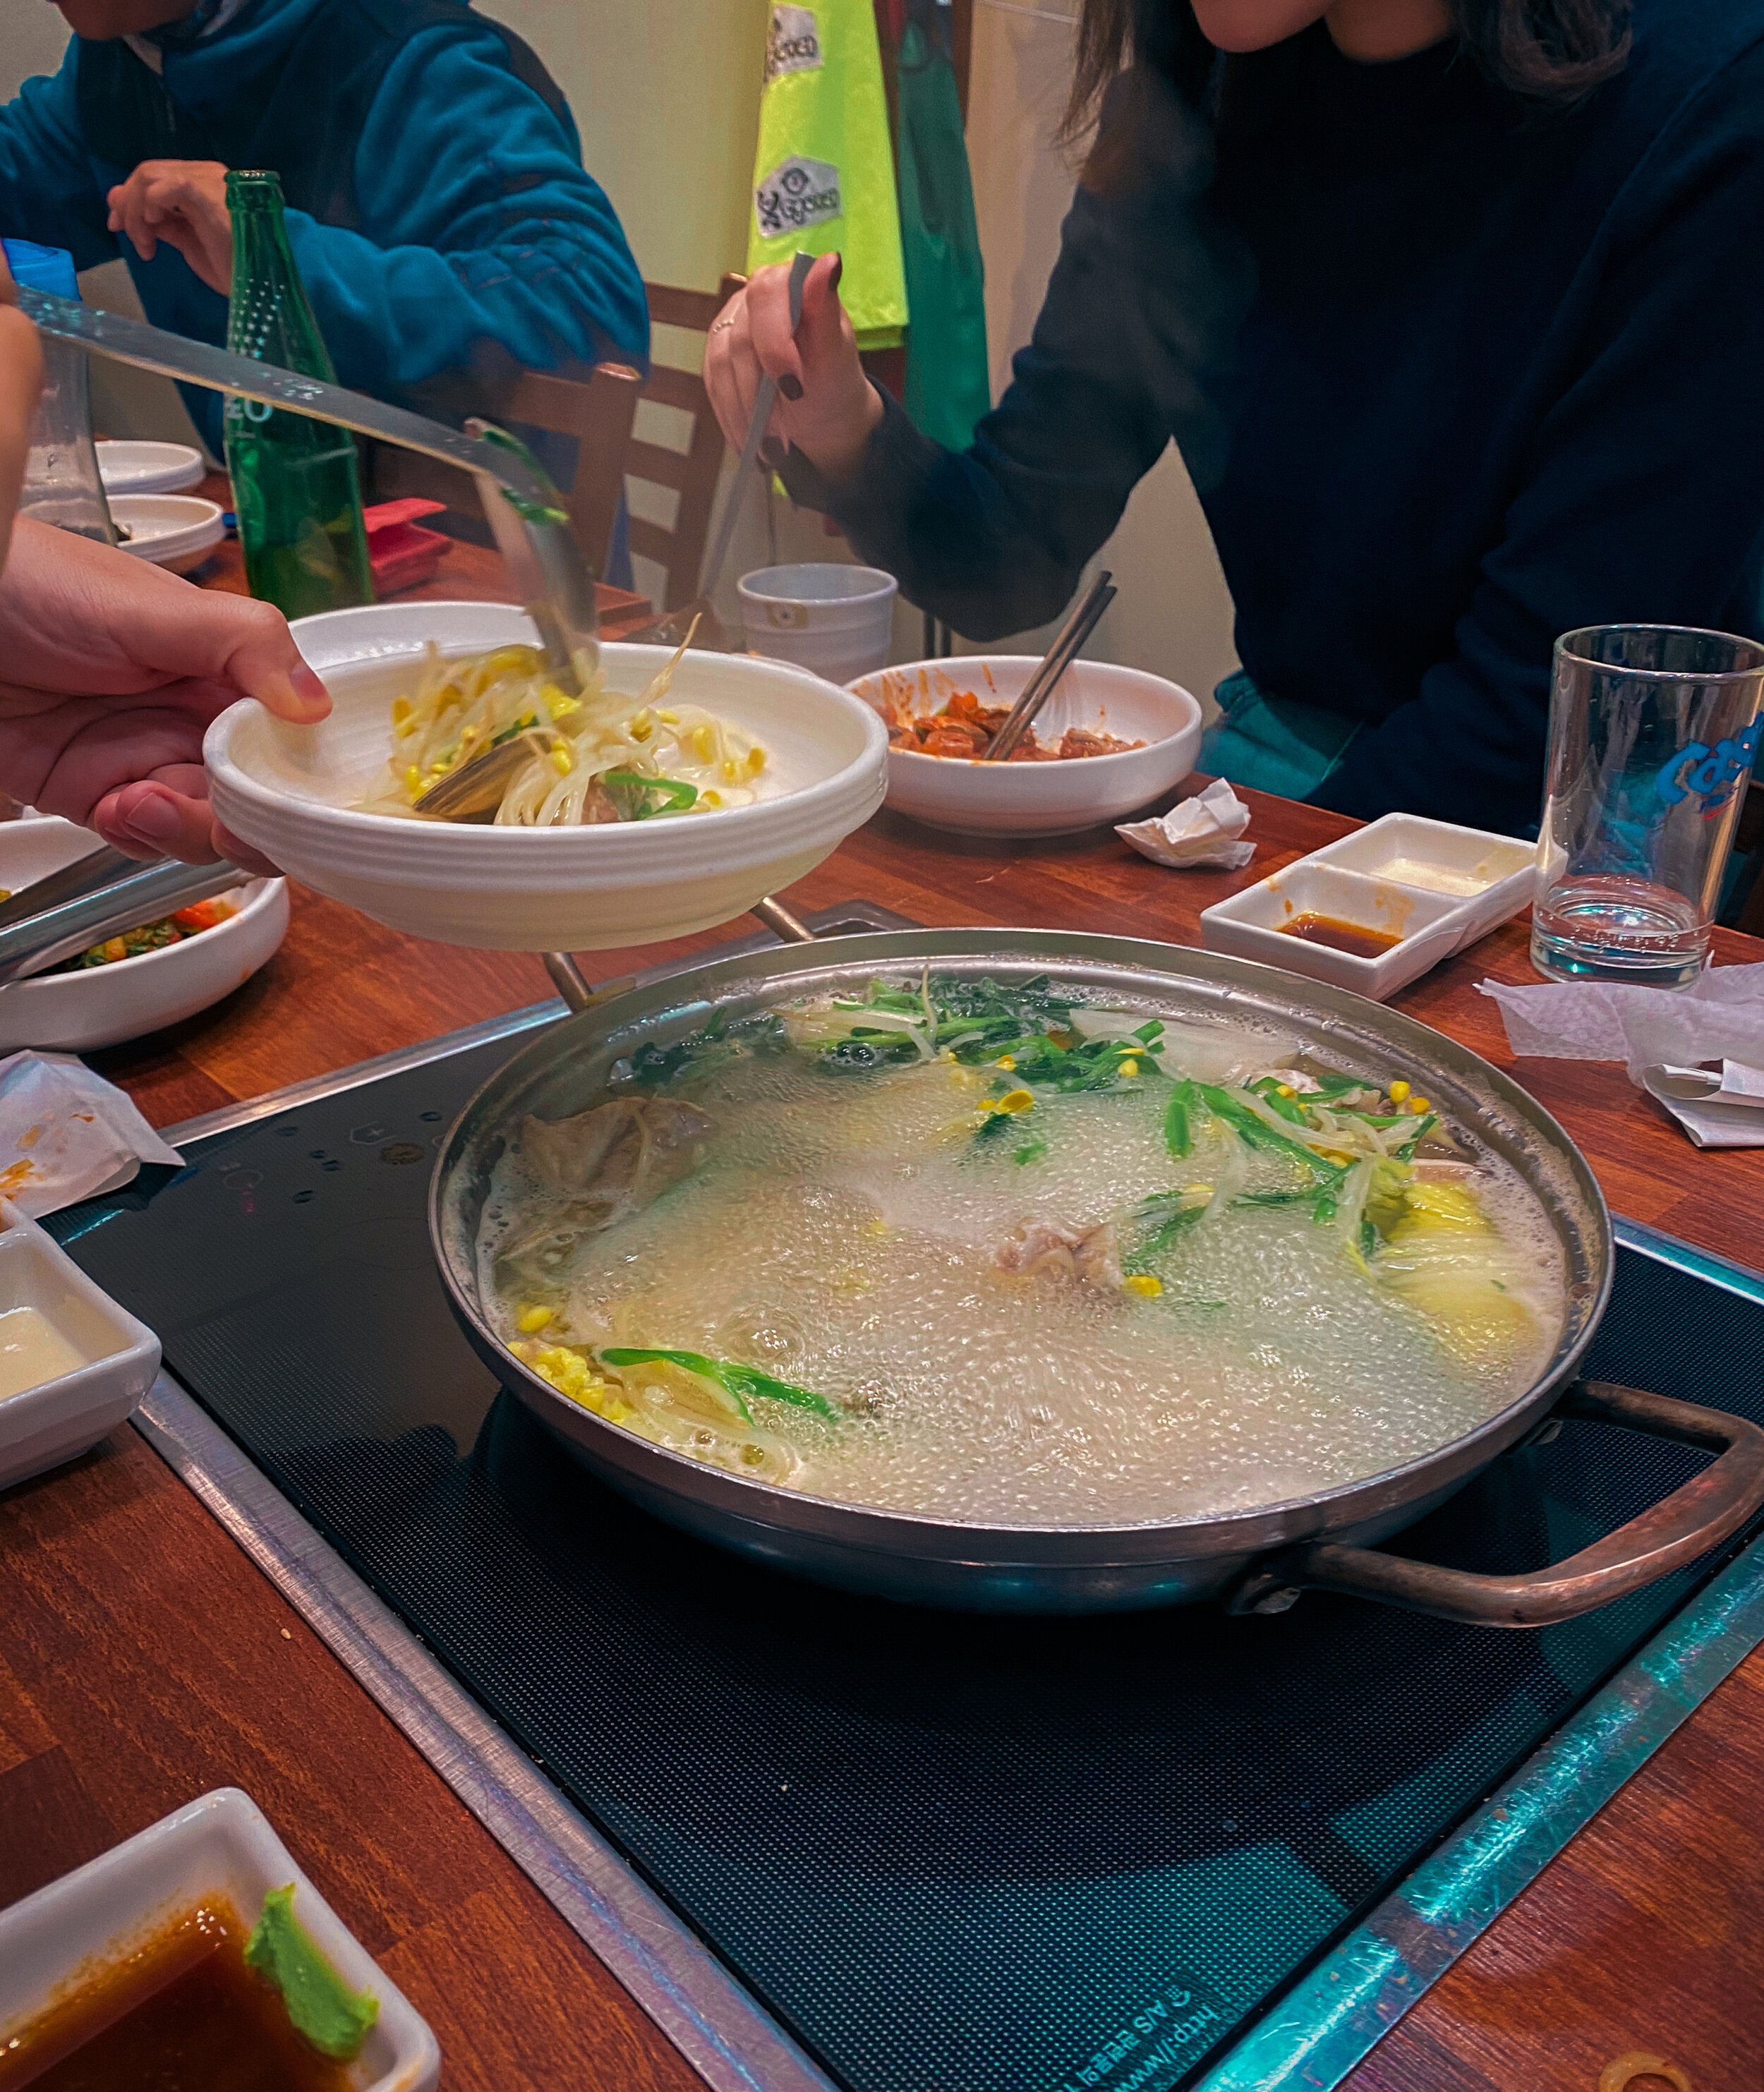 malgeuntang--clear pufferfish soup